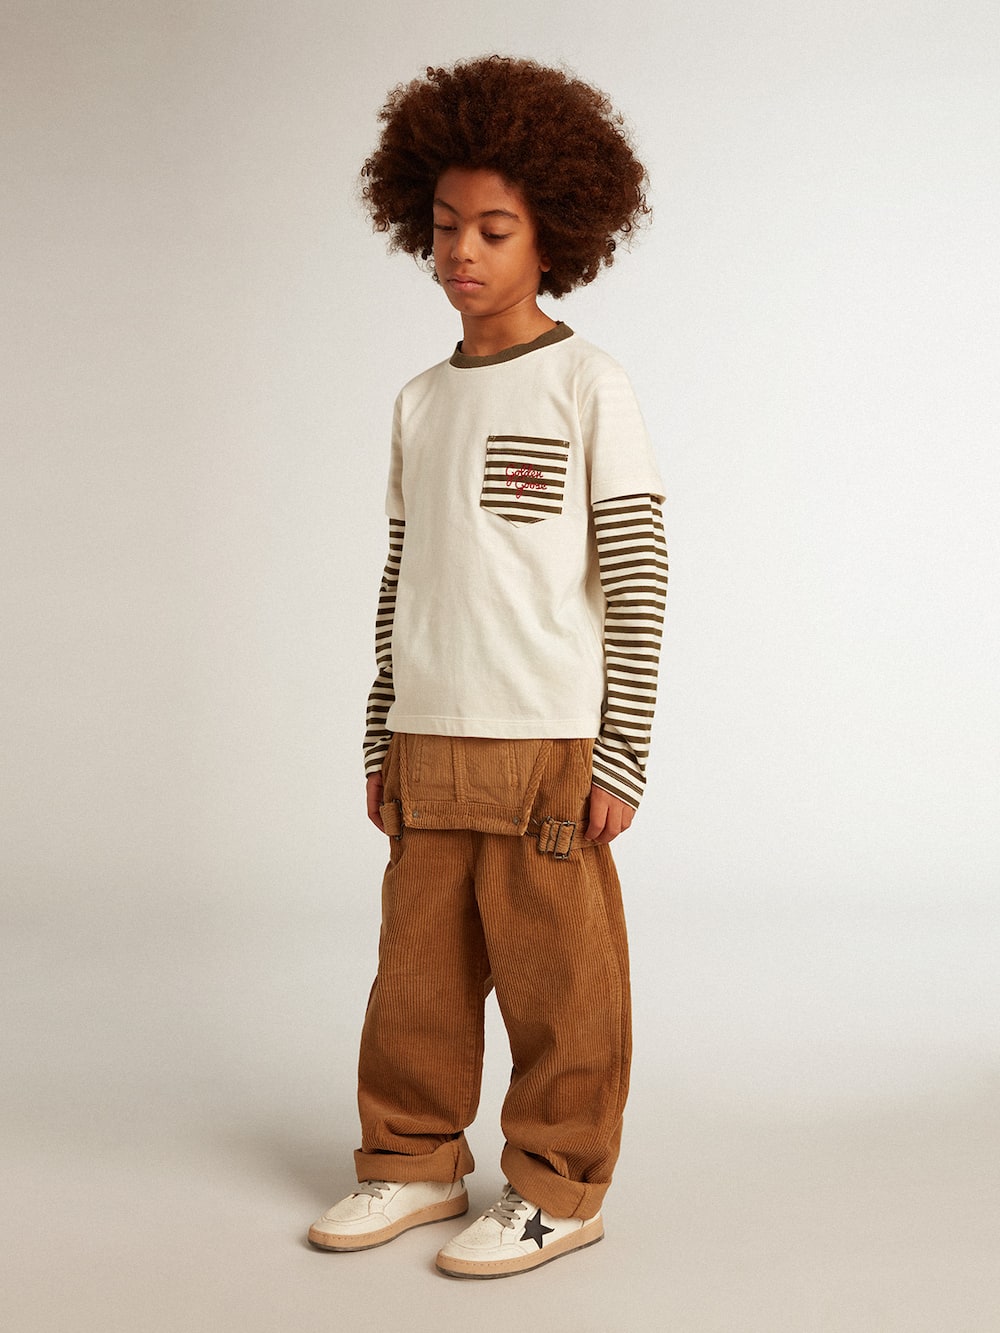 Golden Goose - Camiseta con doble manga de niño en algodón de rayas in 